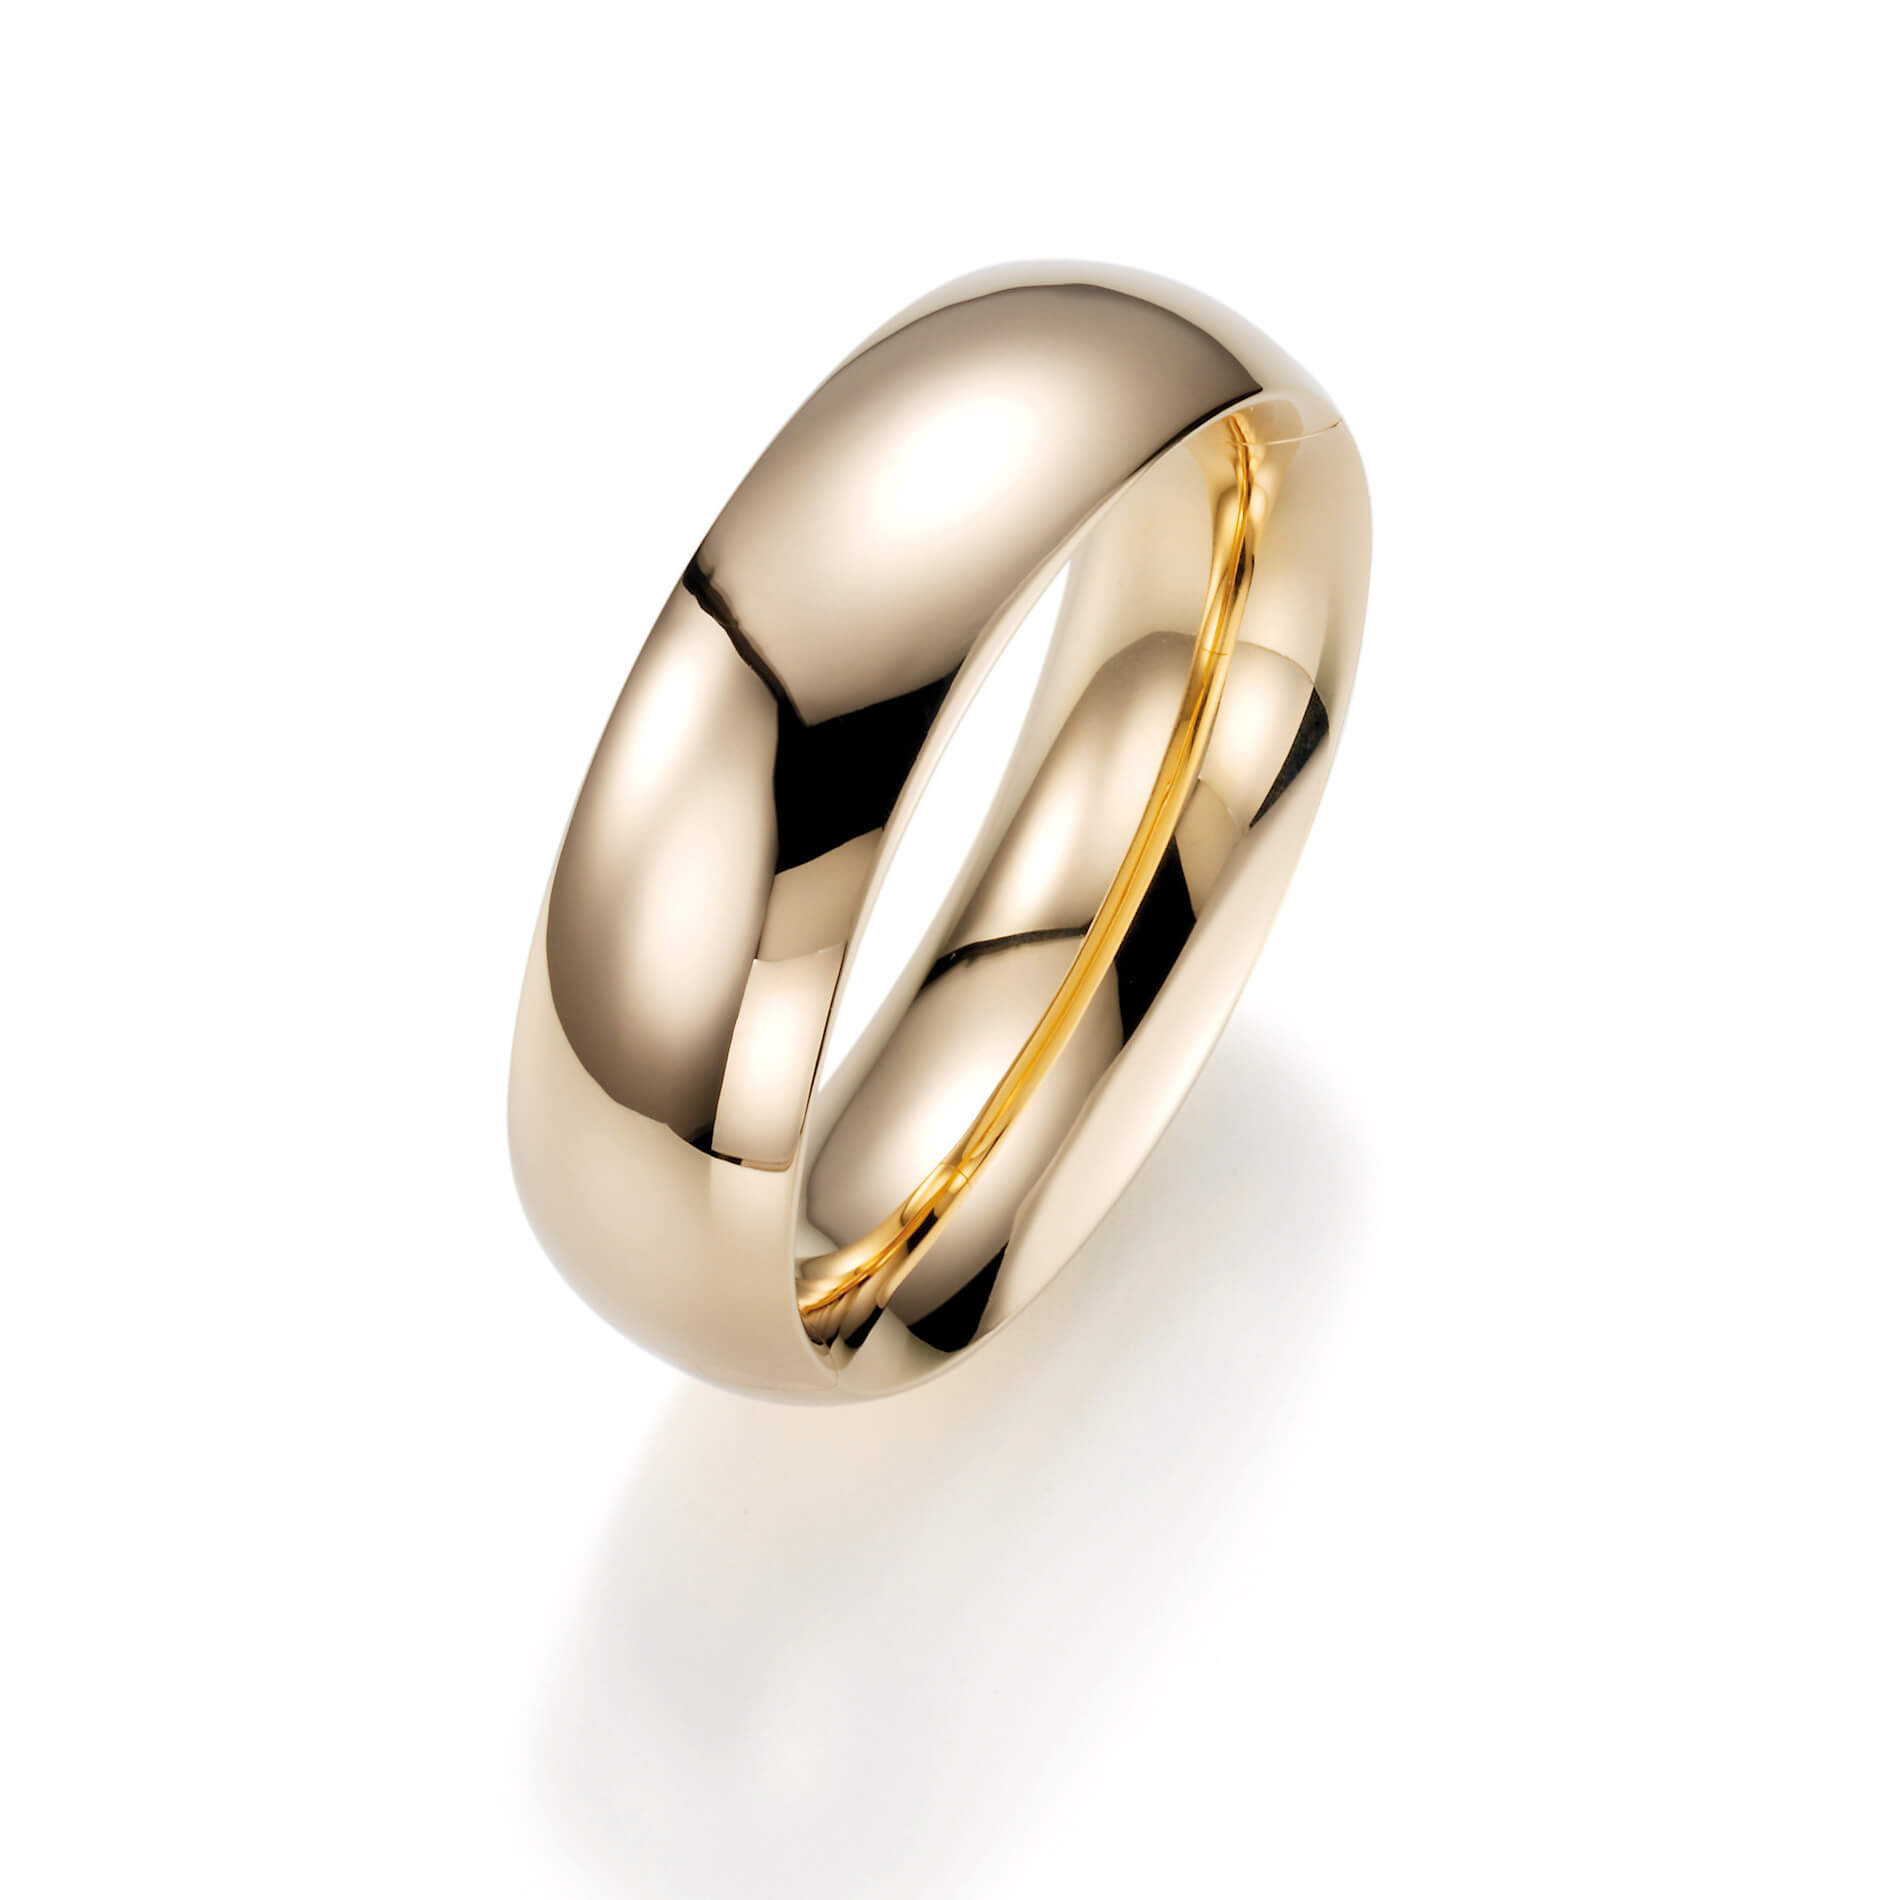 Proveedor al por mayor de joyería de anillos de plata y oro de joyería OEM/ODM al por mayor personalizado